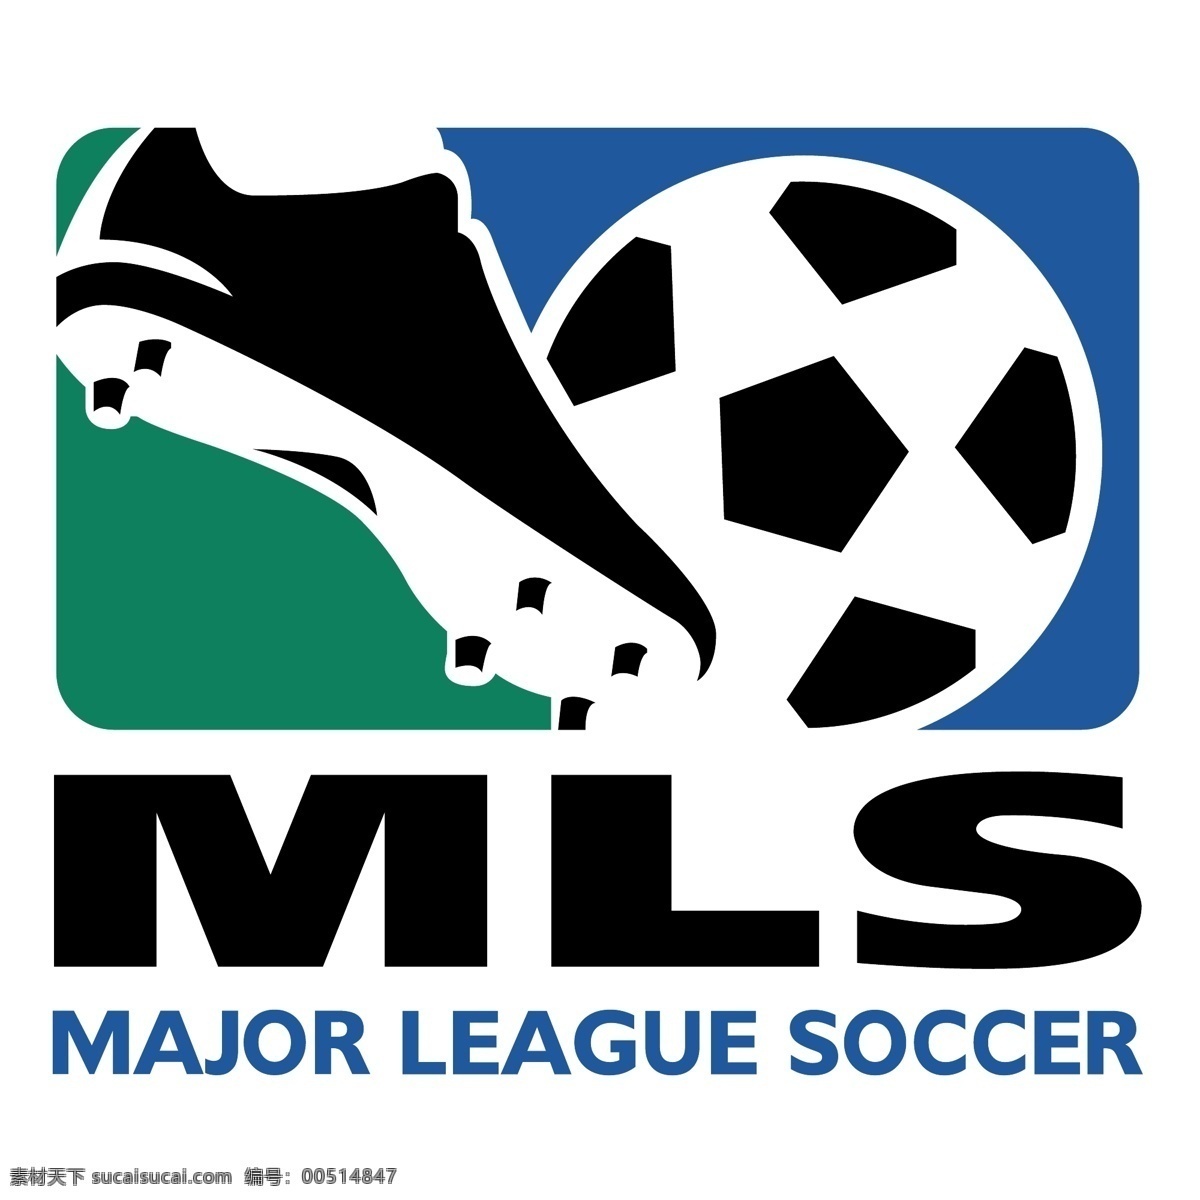 美国 足球 大联盟 自由职业 标志 标识 psd源文件 logo设计